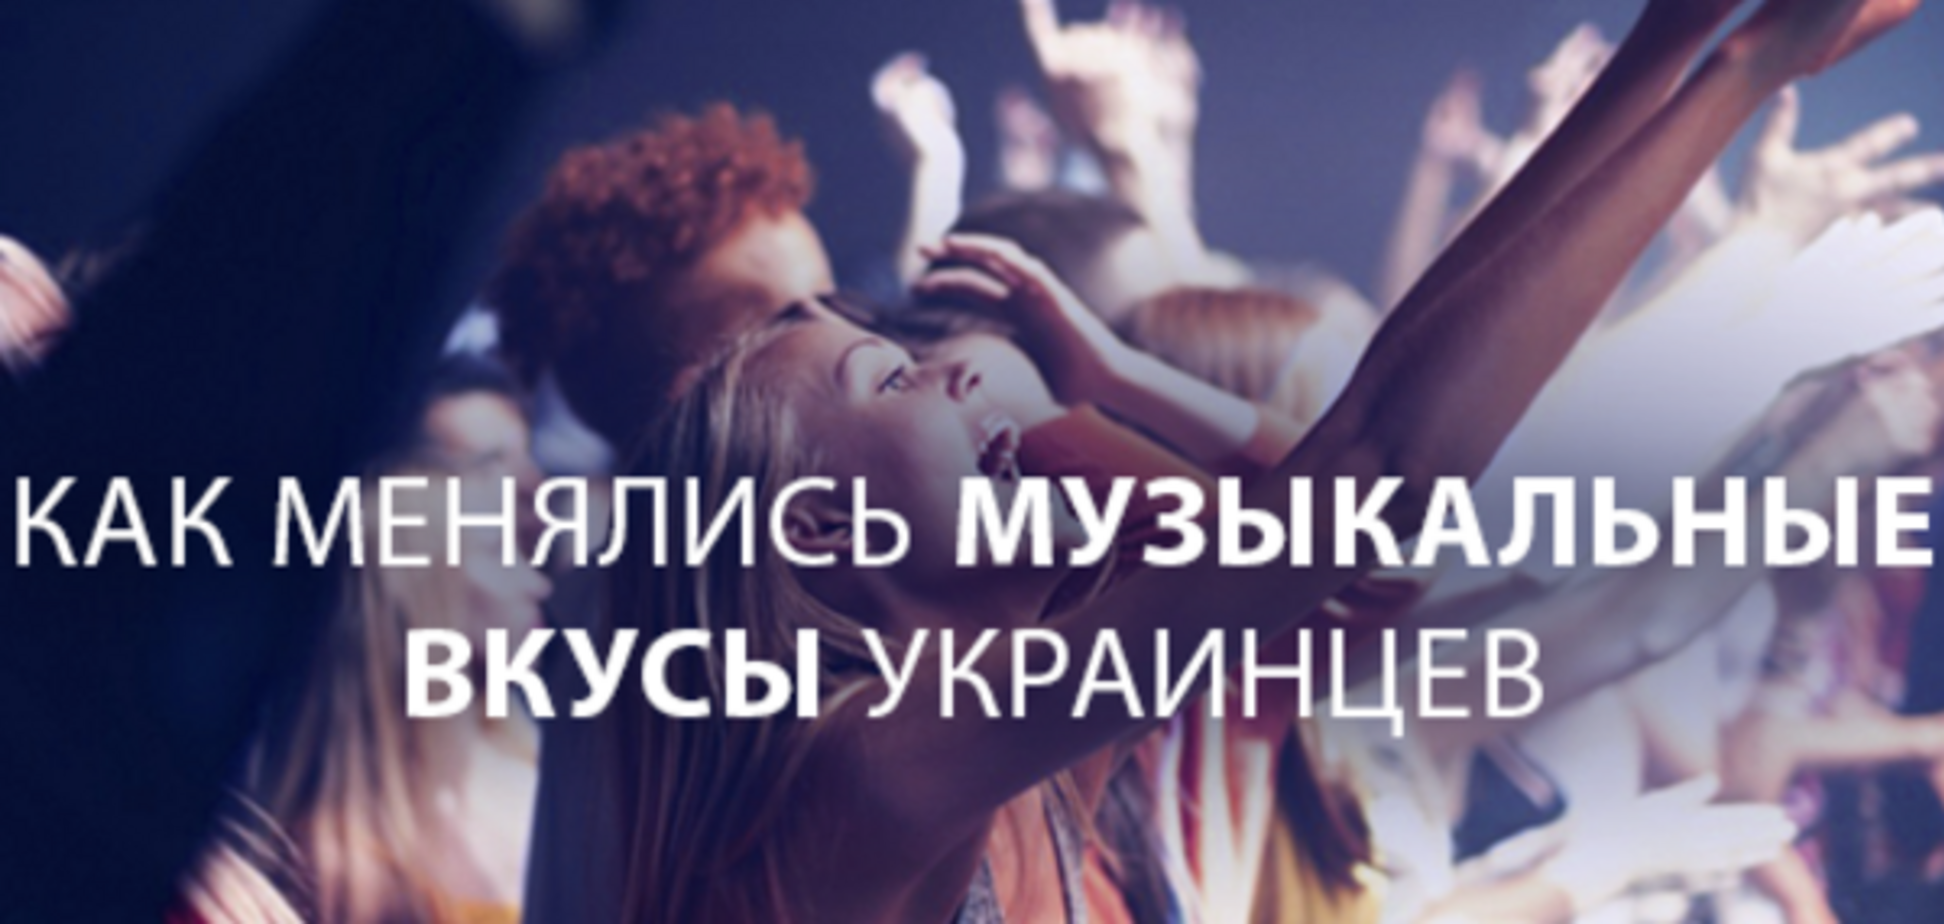 От Depeche Mode до Океана Ельзи: как менялись музыкальные вкусы украинцев